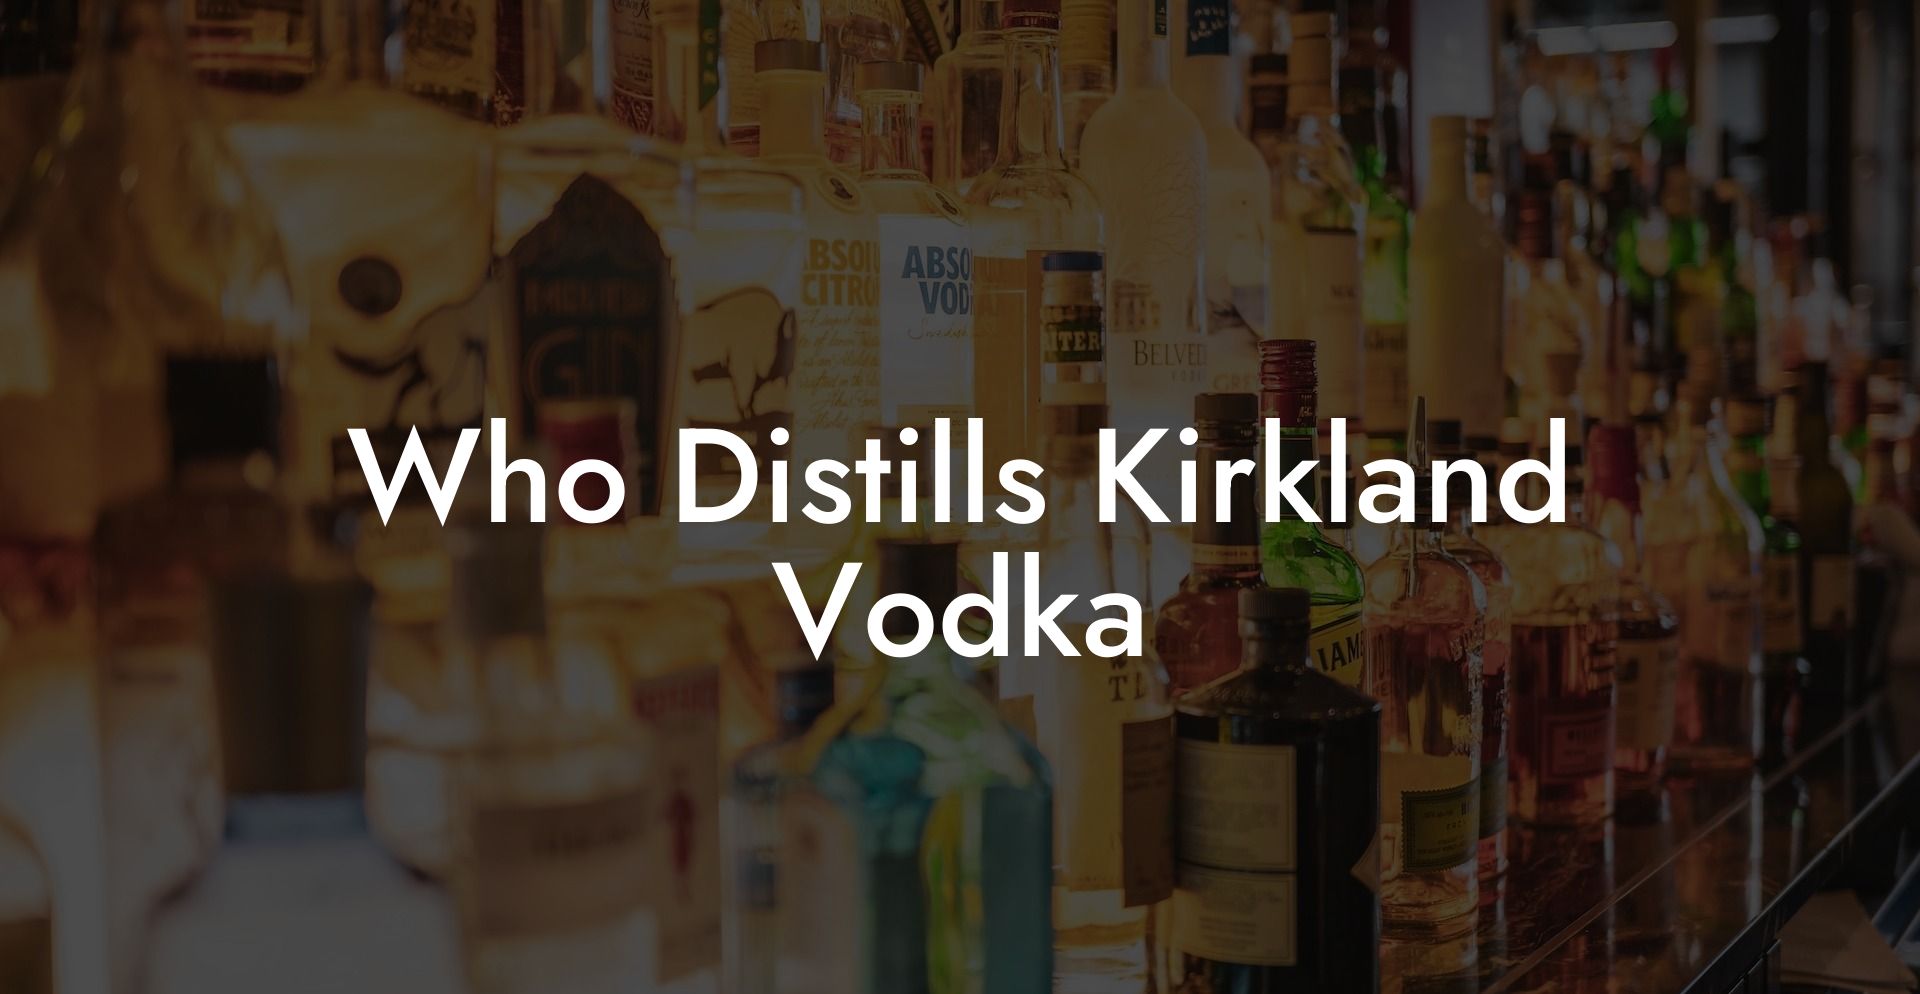 Who Distills Kirkland Vodka